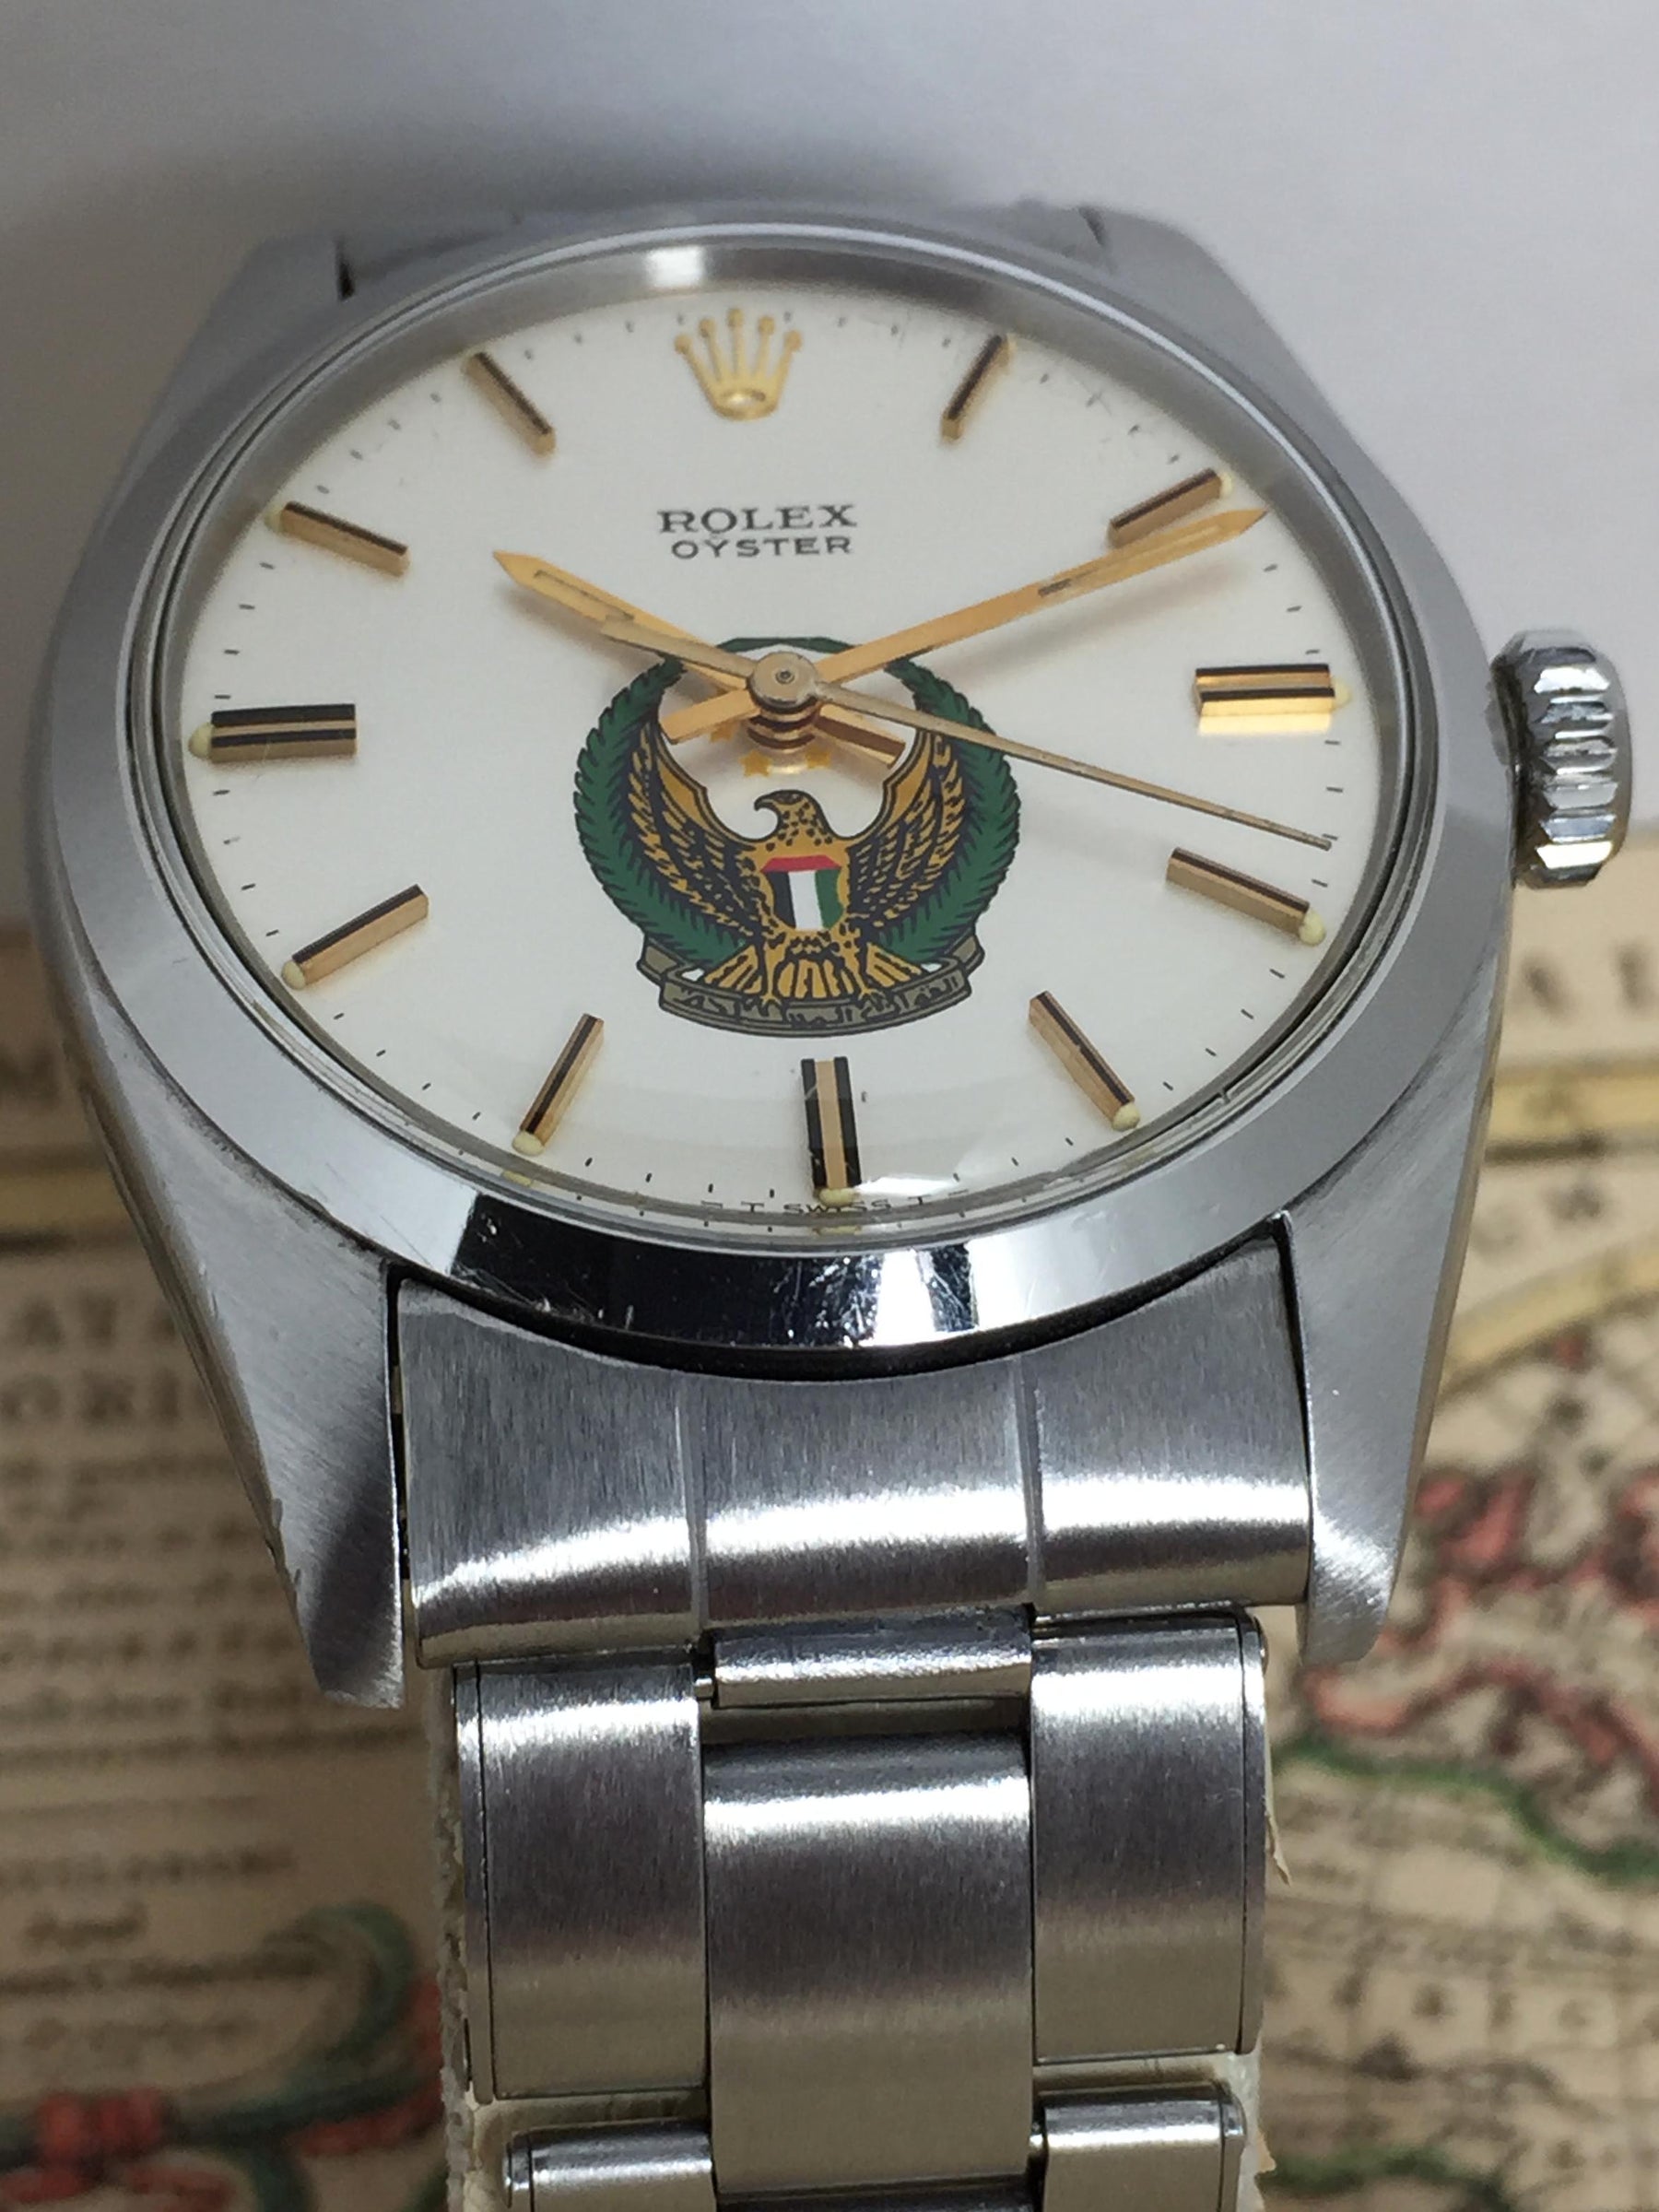 1975 Rolex Precision UAE Ref. 6426